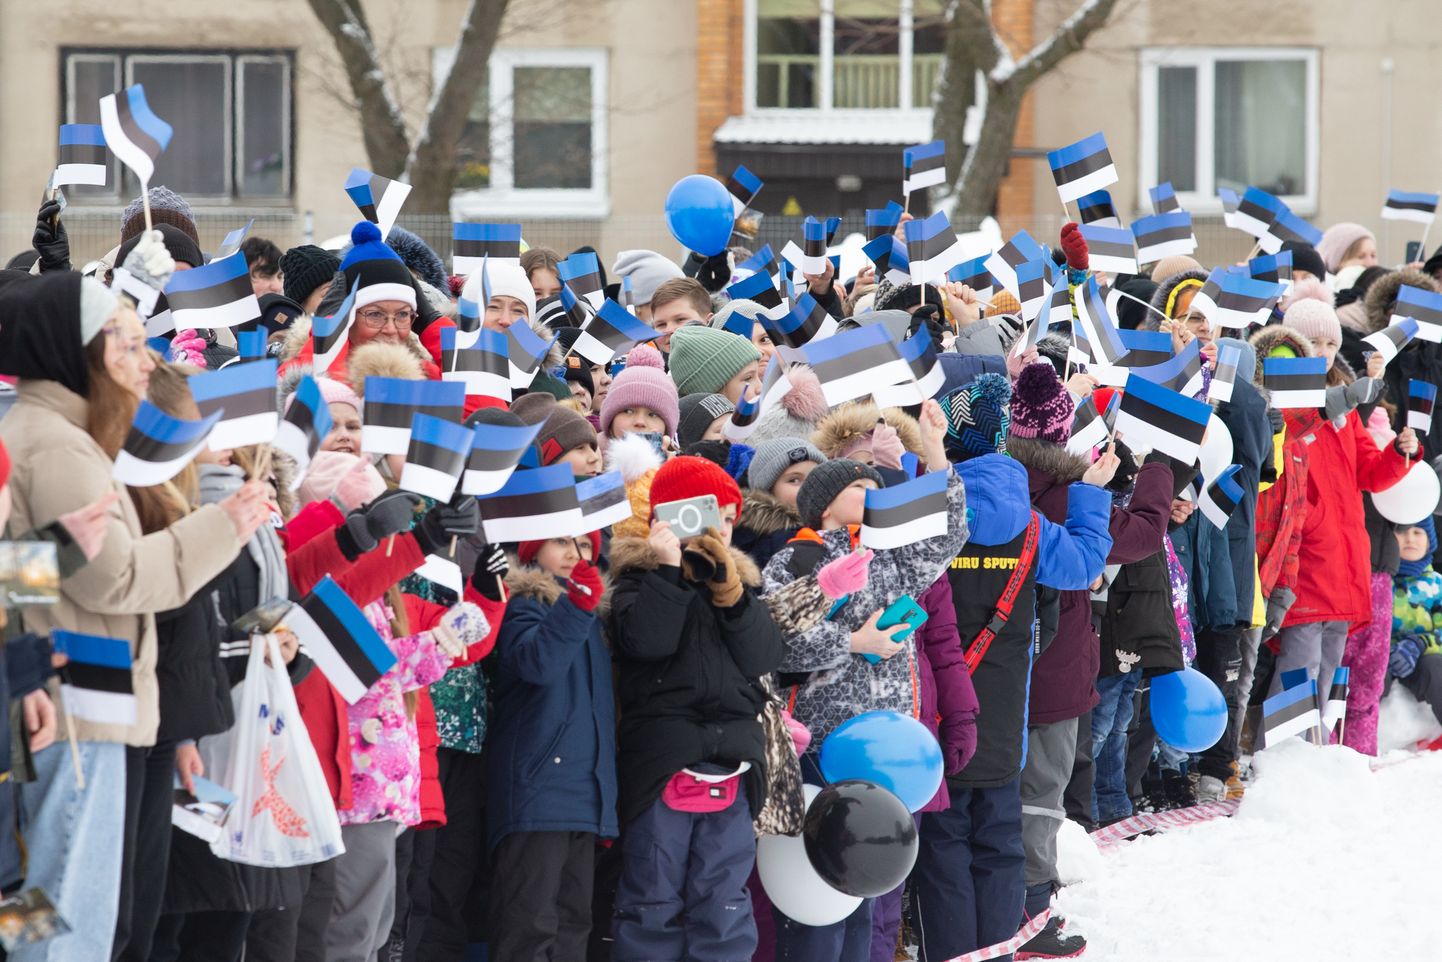 Kohtla-Järve traditsioonilisel Eesti Vabariigi aastapäeva pidulikul väliaktusel löövad kaasa koolid ja lasteaiad.